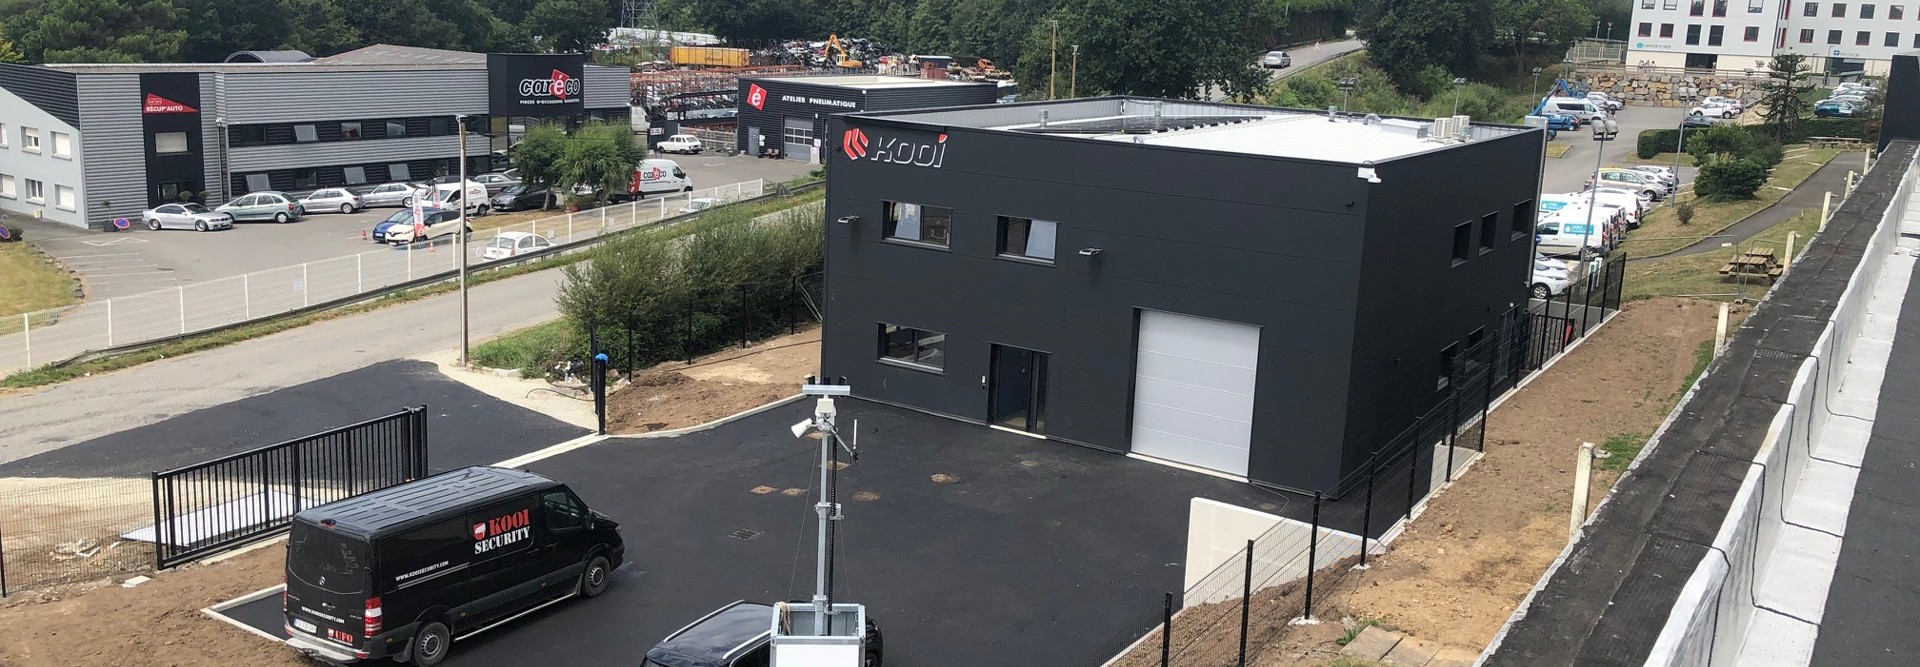 Kooi Eröffnet Neu Erbautes Headquarter In Frankreich